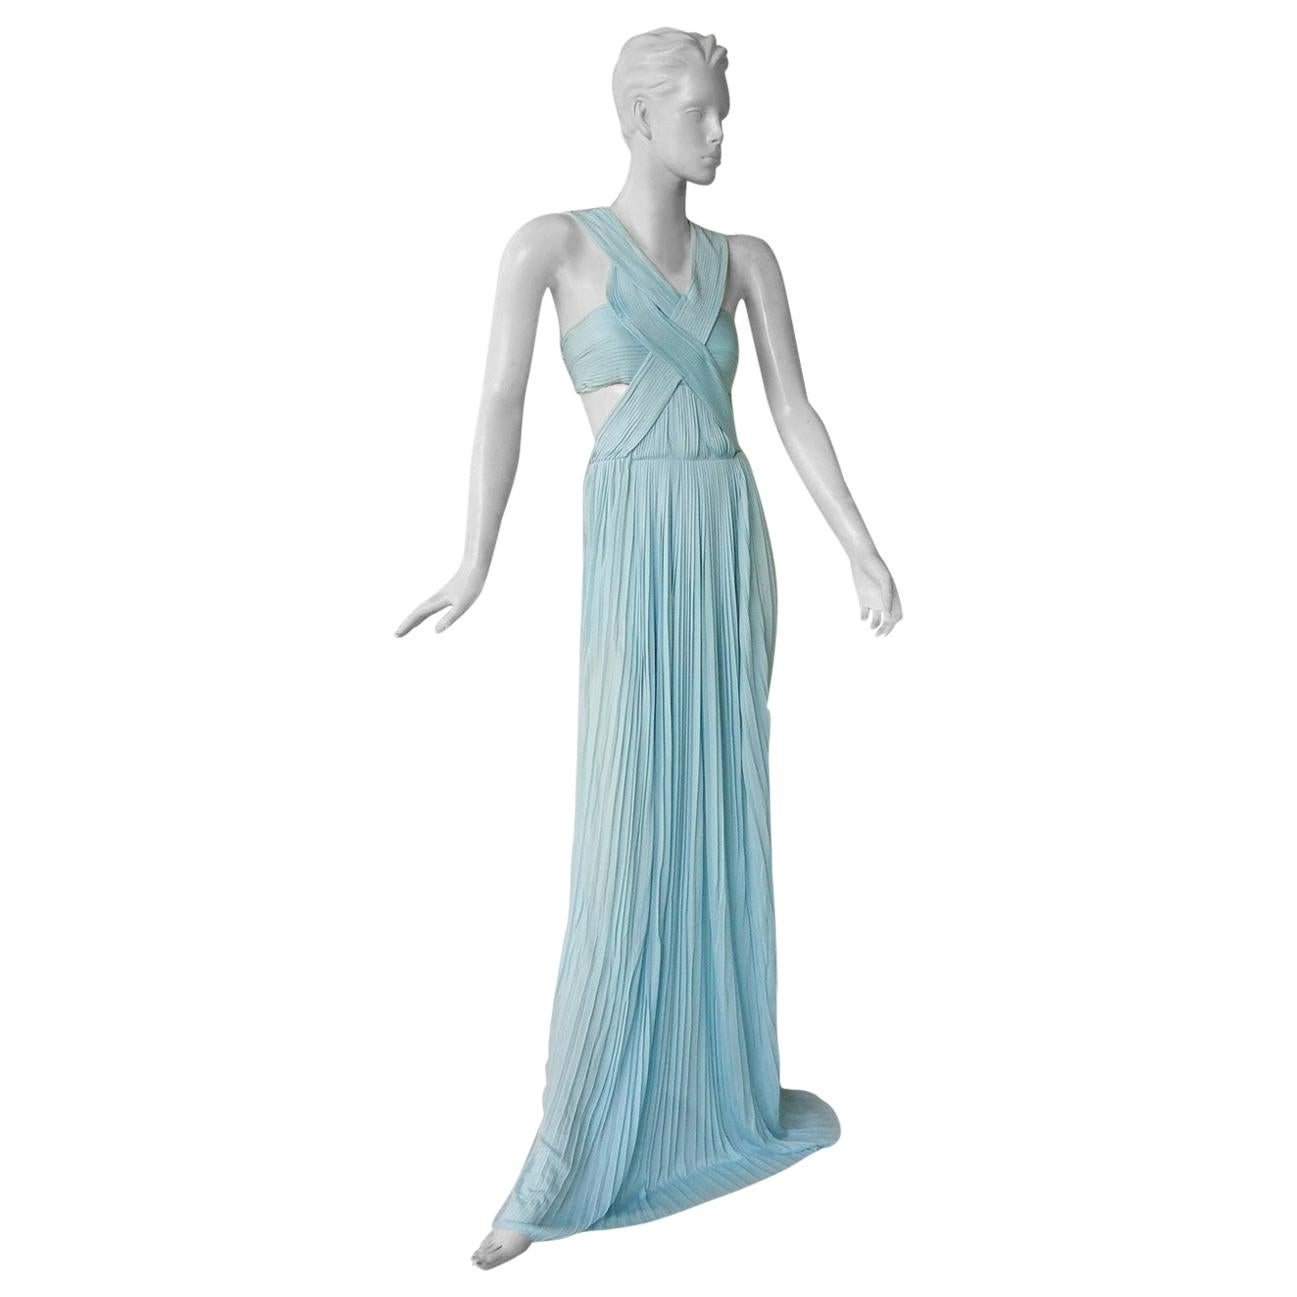 Vionnet Runway Veraline Blau Plissee Ausschnitt Plissee-Kleid Kleid   NWT